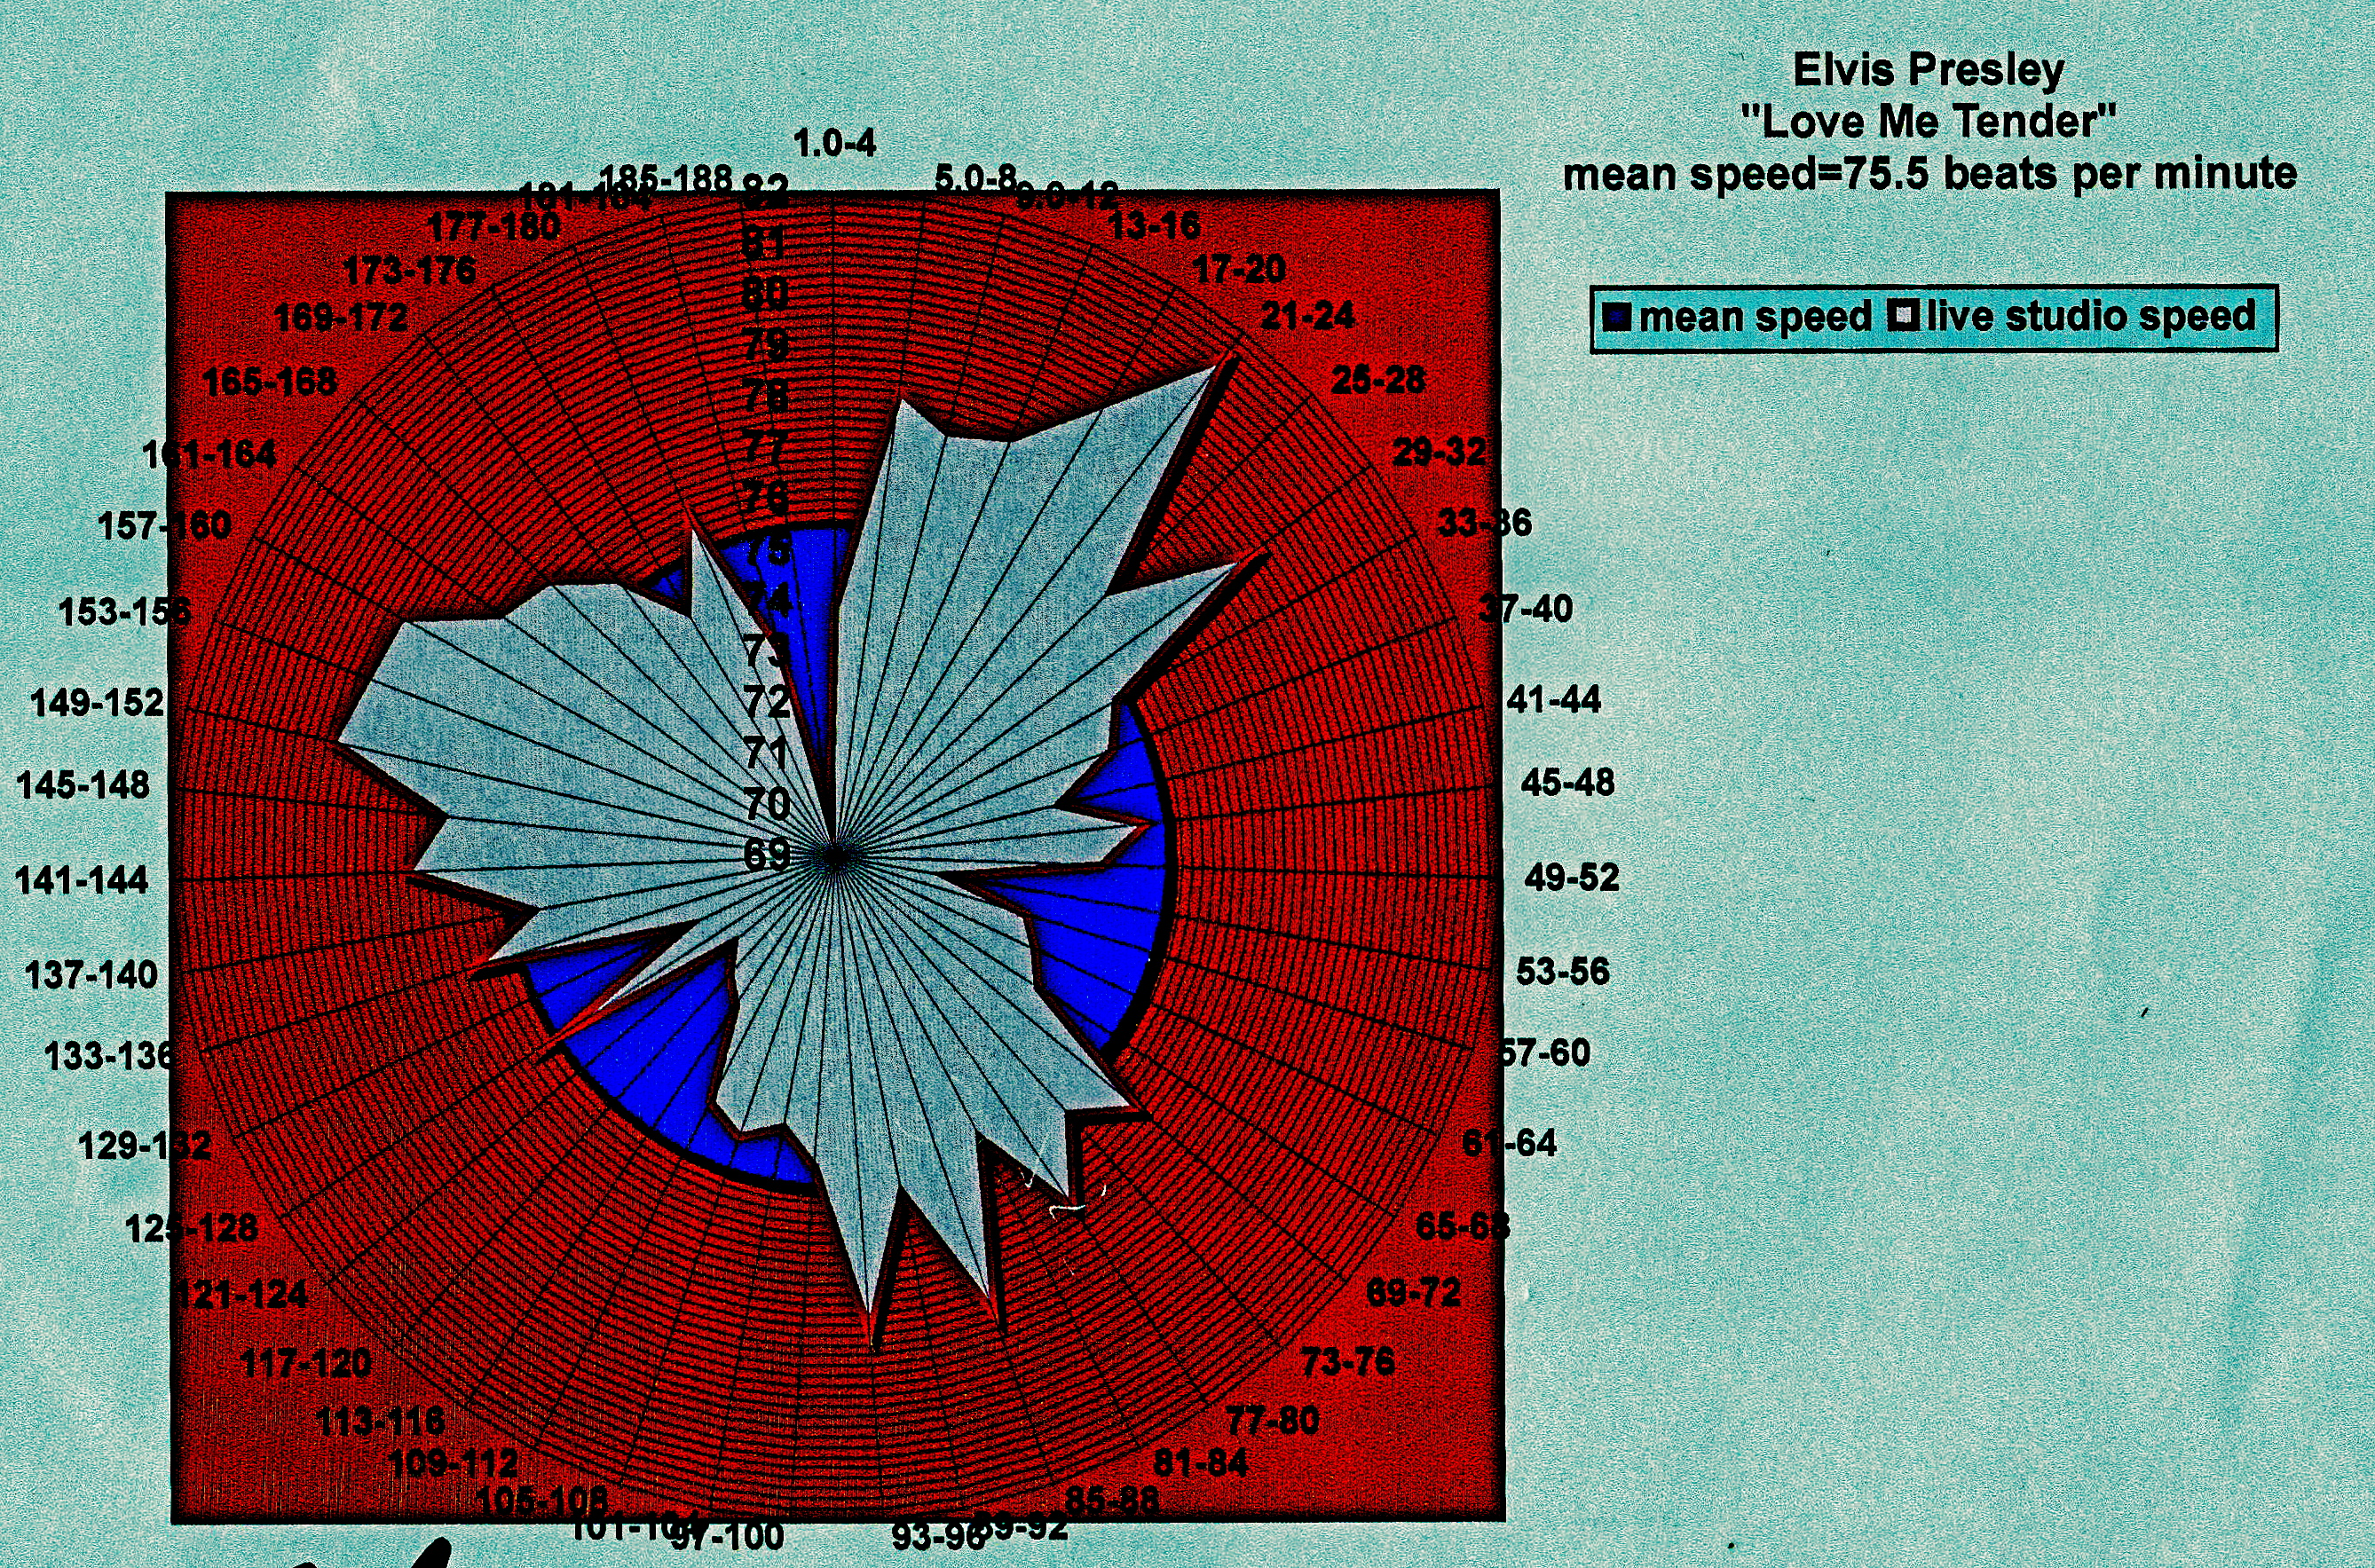 Elvis-Love-Me-Tender-tempo-diagram-dcclxxiv.png copy 2